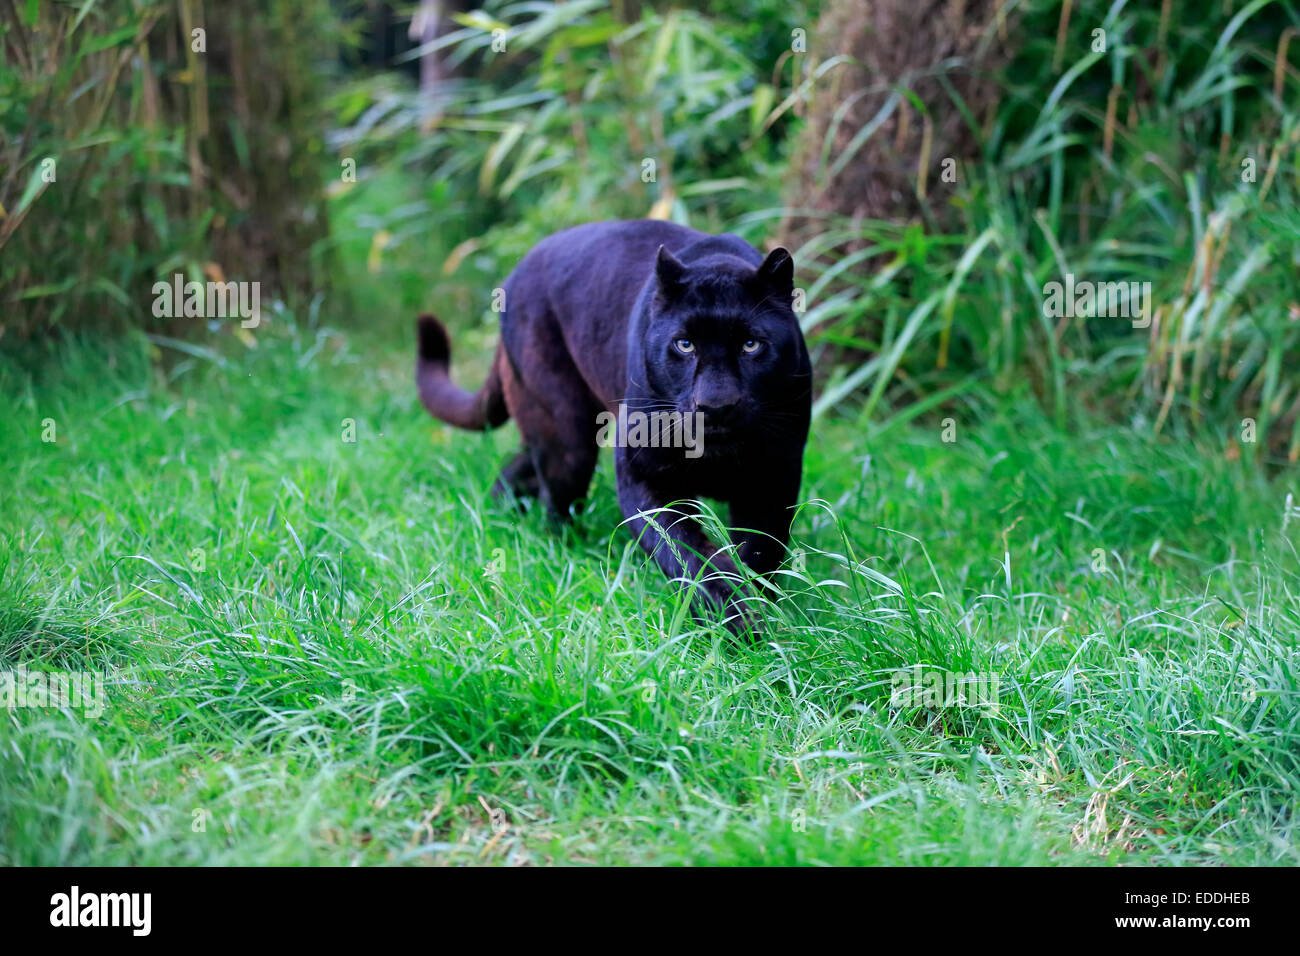 Léopard, panthère noire (Panthera pardus), des profils, de filatures, de provenance de l'Afrique, captive, Angleterre, Royaume-Uni Banque D'Images